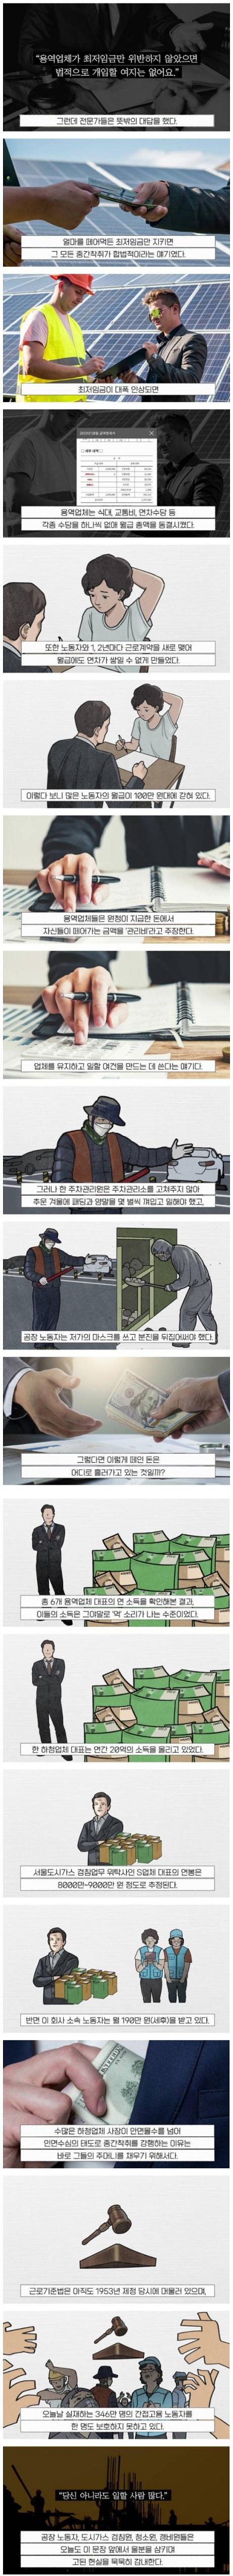 한국에서만 억대연봉 받는 직업.jpg 2.jpg